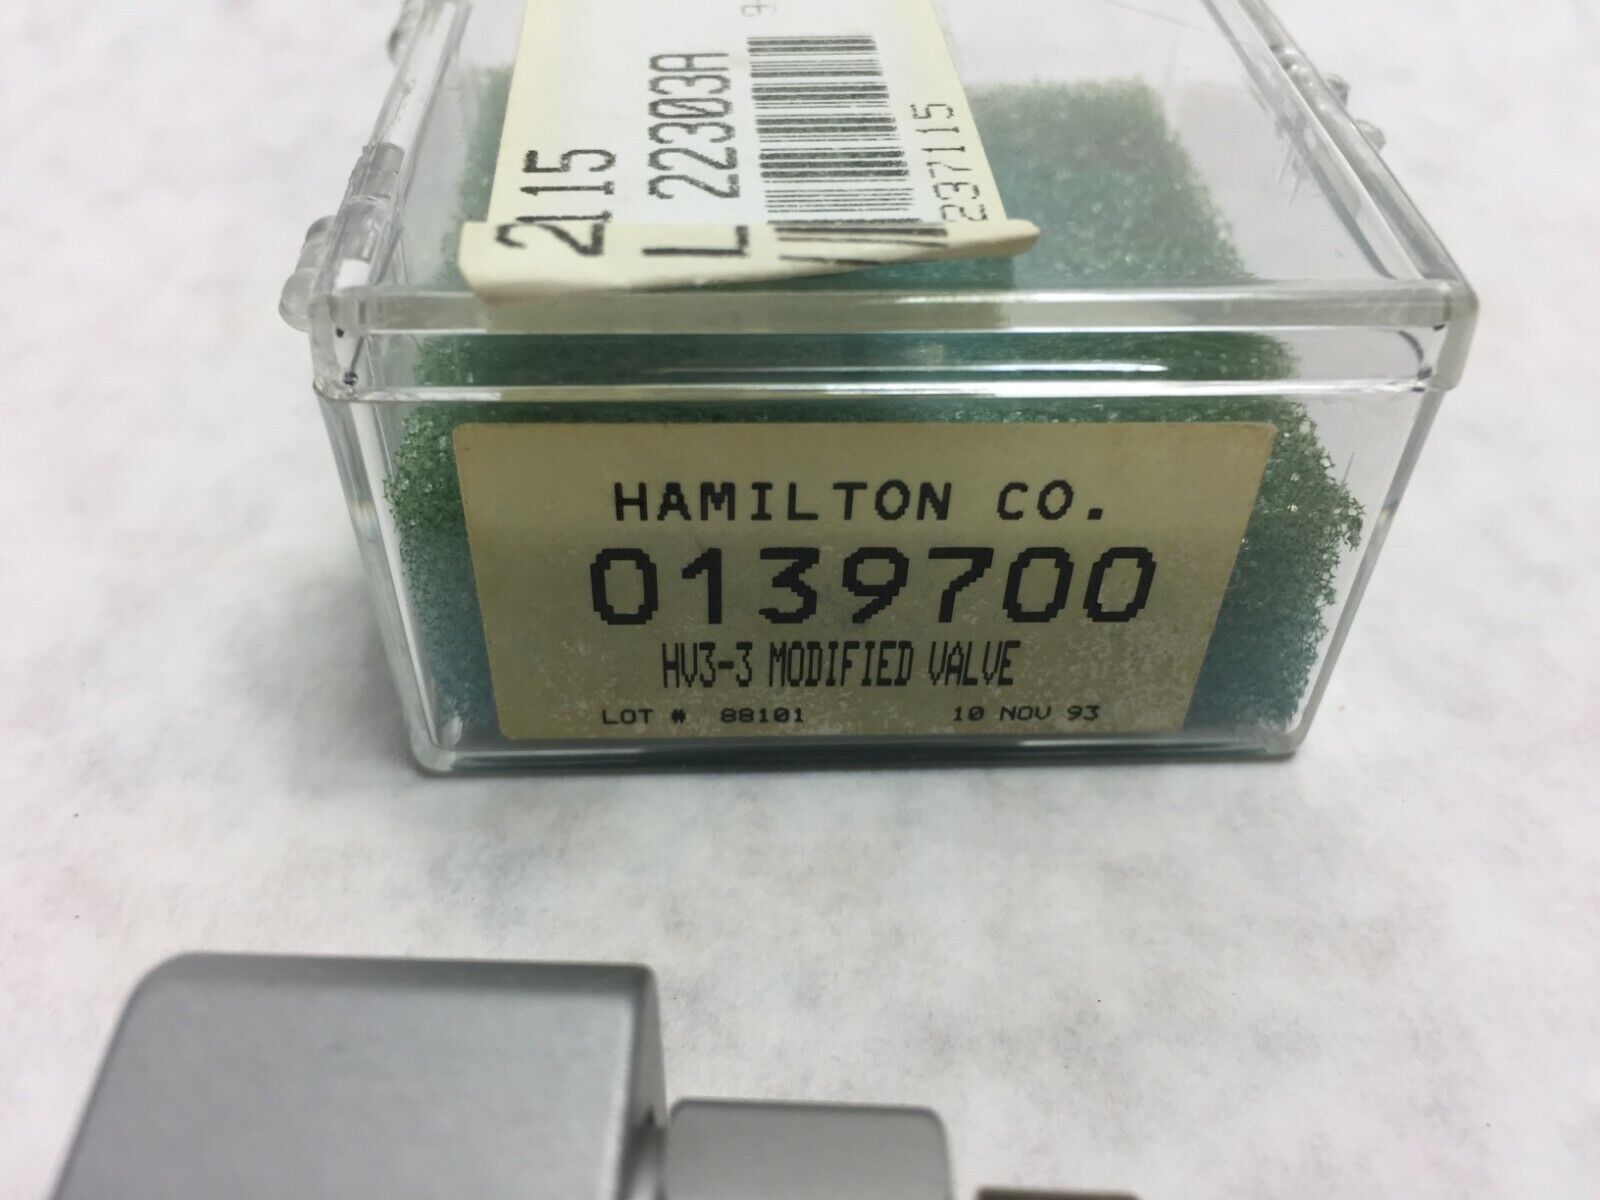 Hamilton HV3-3 Modified Valve  0139700  237115  NOS